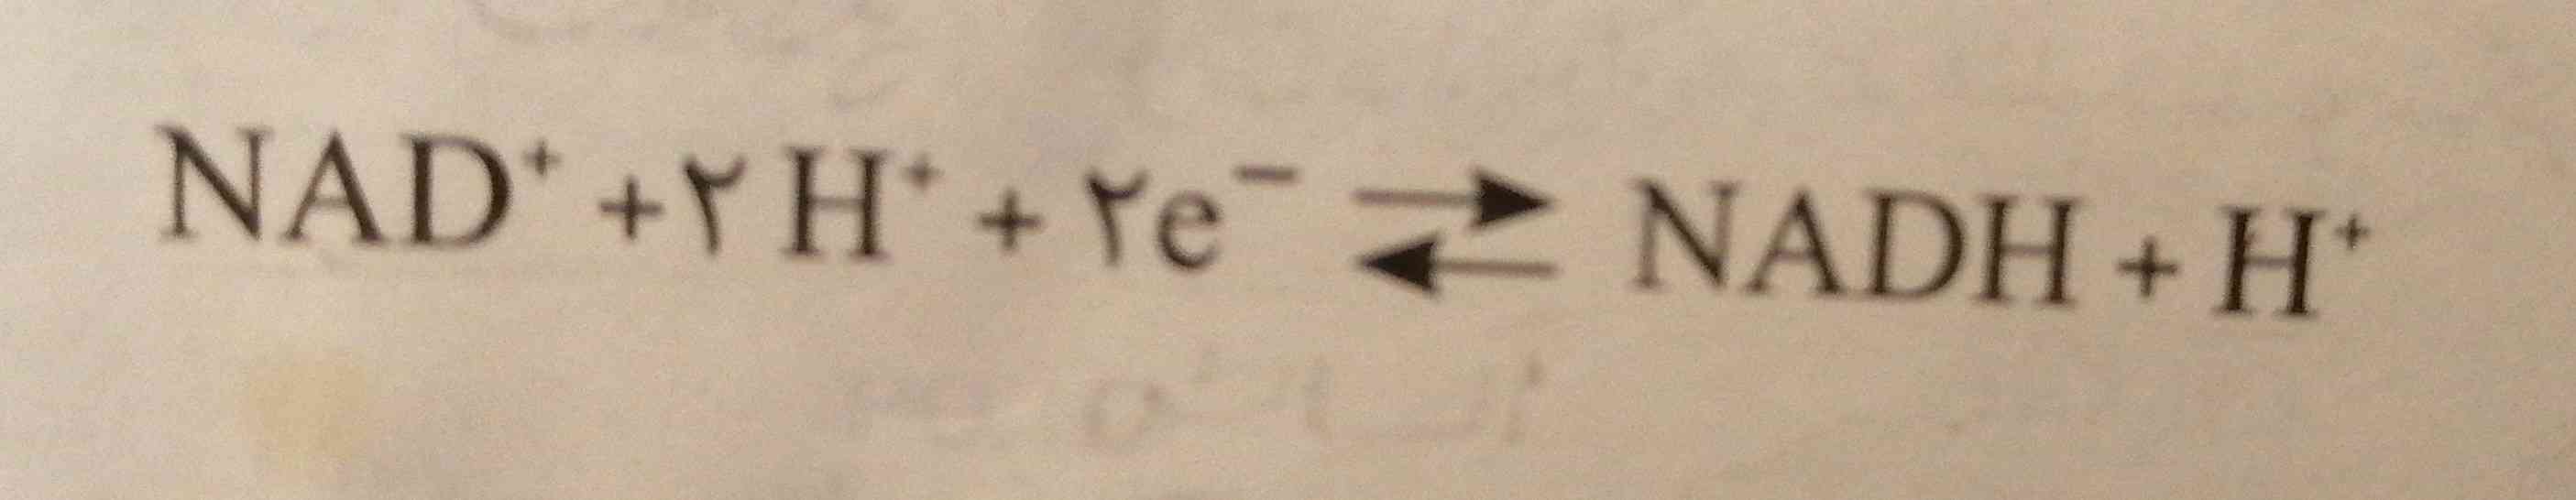 سلام
لطفا این معادله رو کامل توضیح می دهید. 